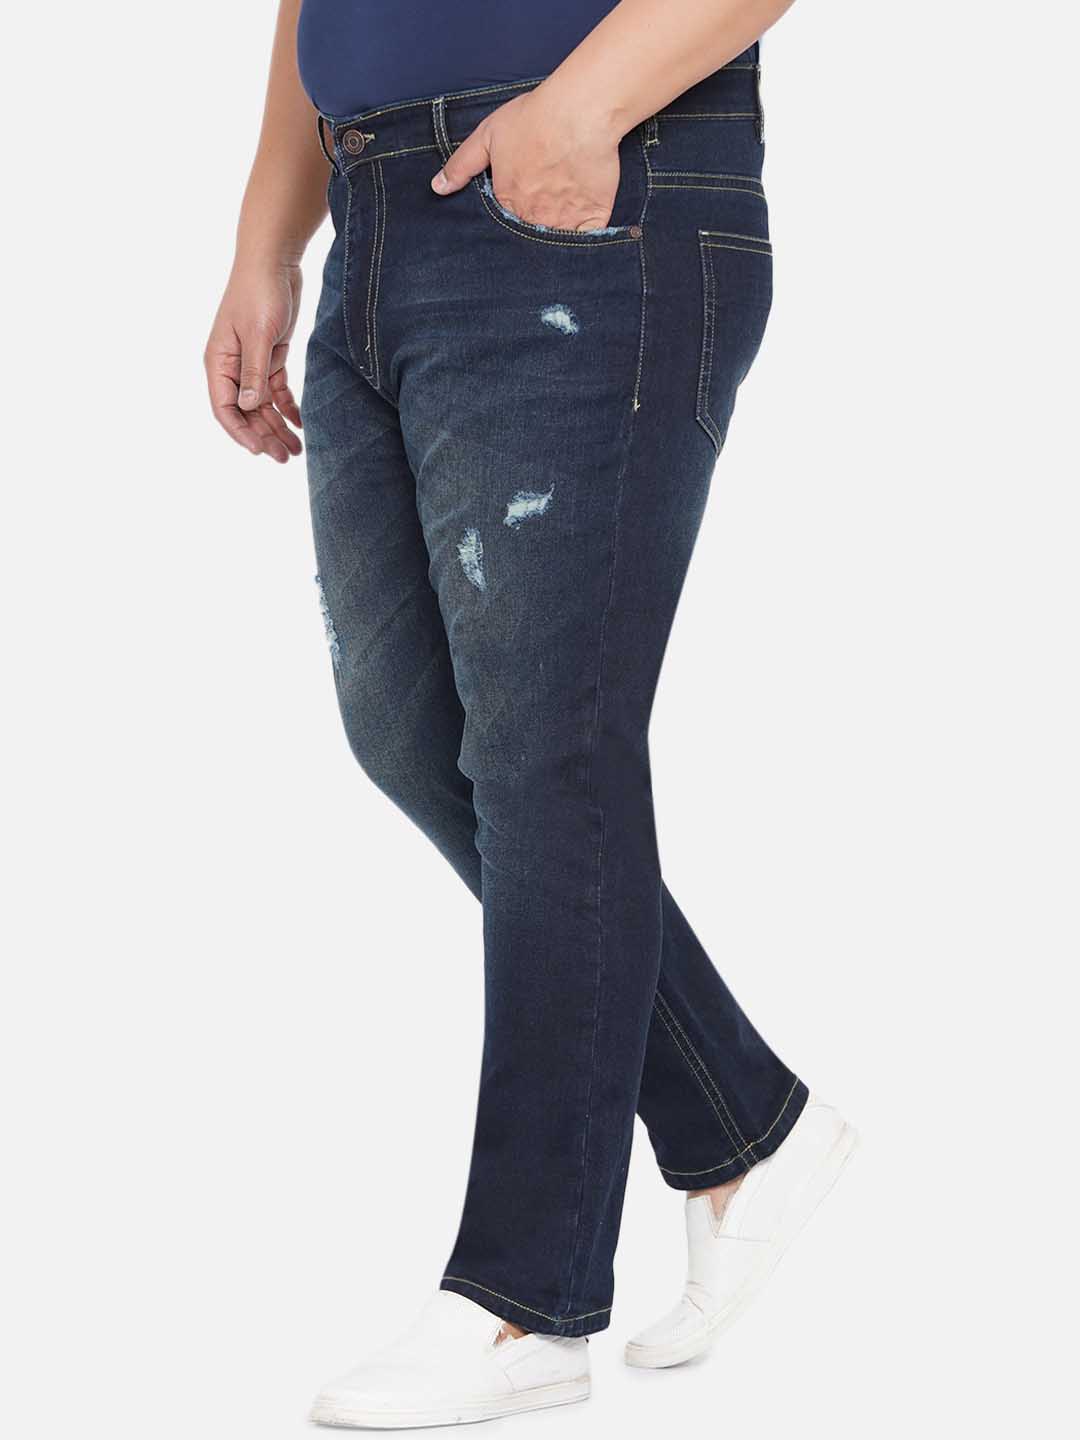 bottomwear/jeans/JPJ12235/jpj12235-4.jpg